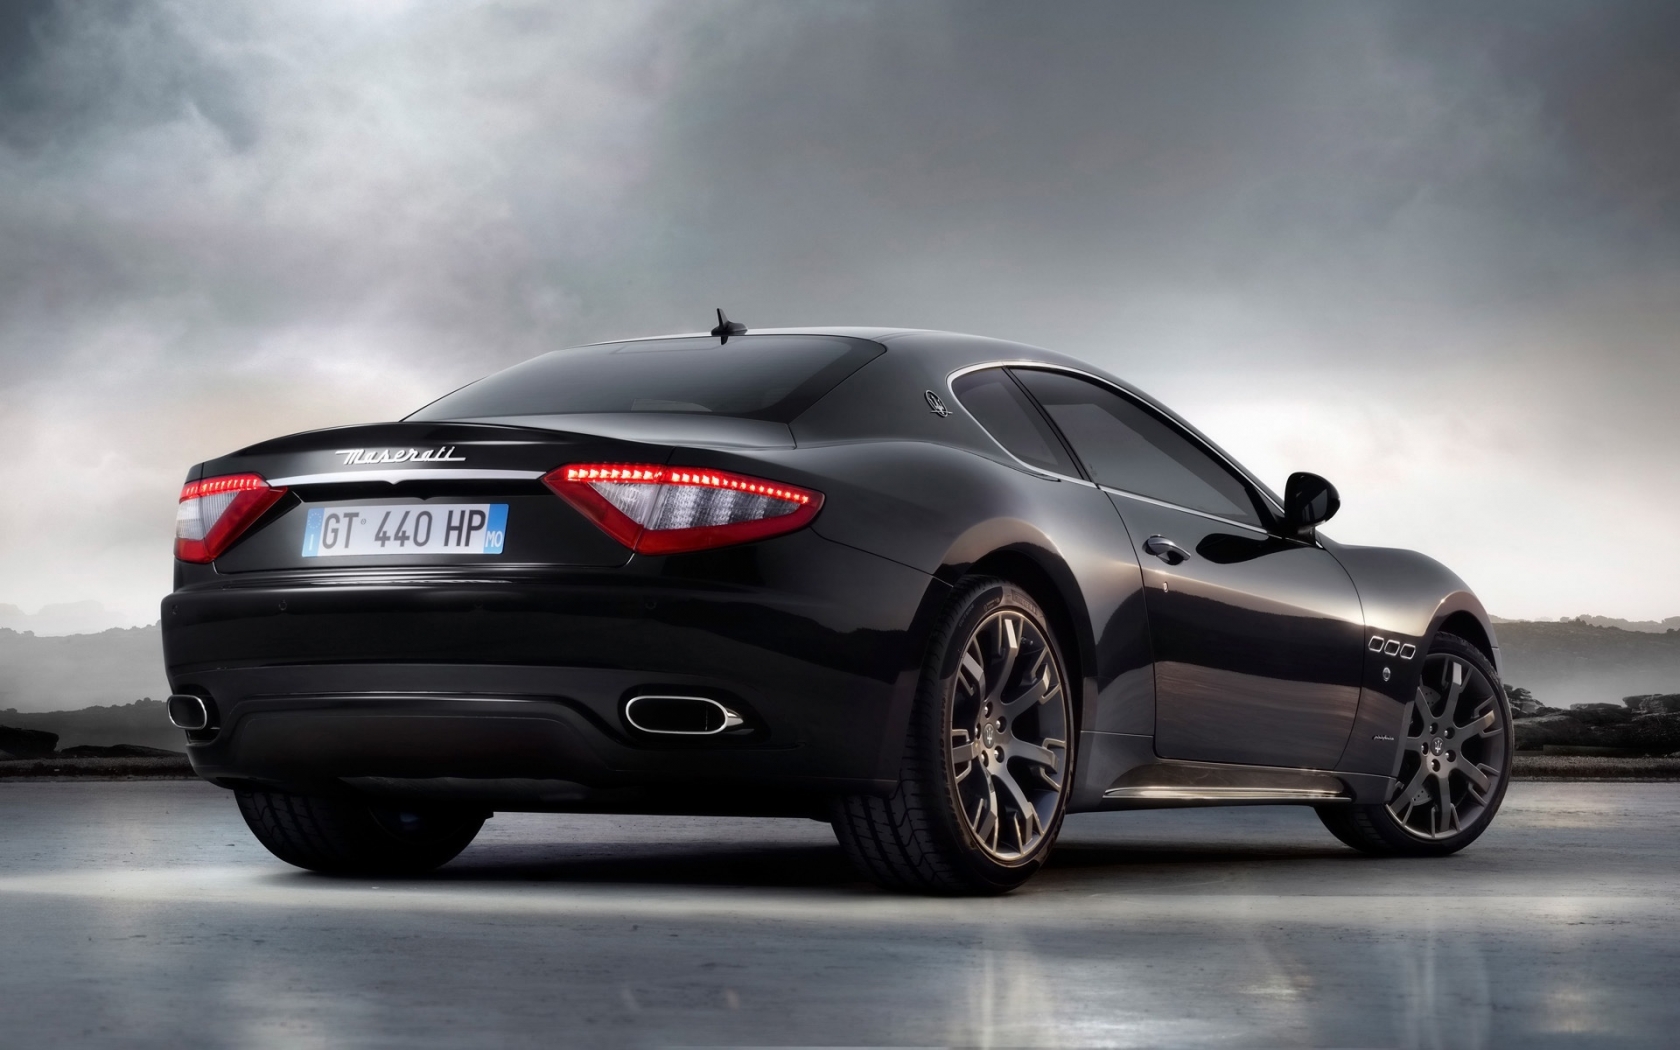 Maserati Gran Turismo 2010 S Black Rear Angle for 1680 x 1050 widescreen resolution